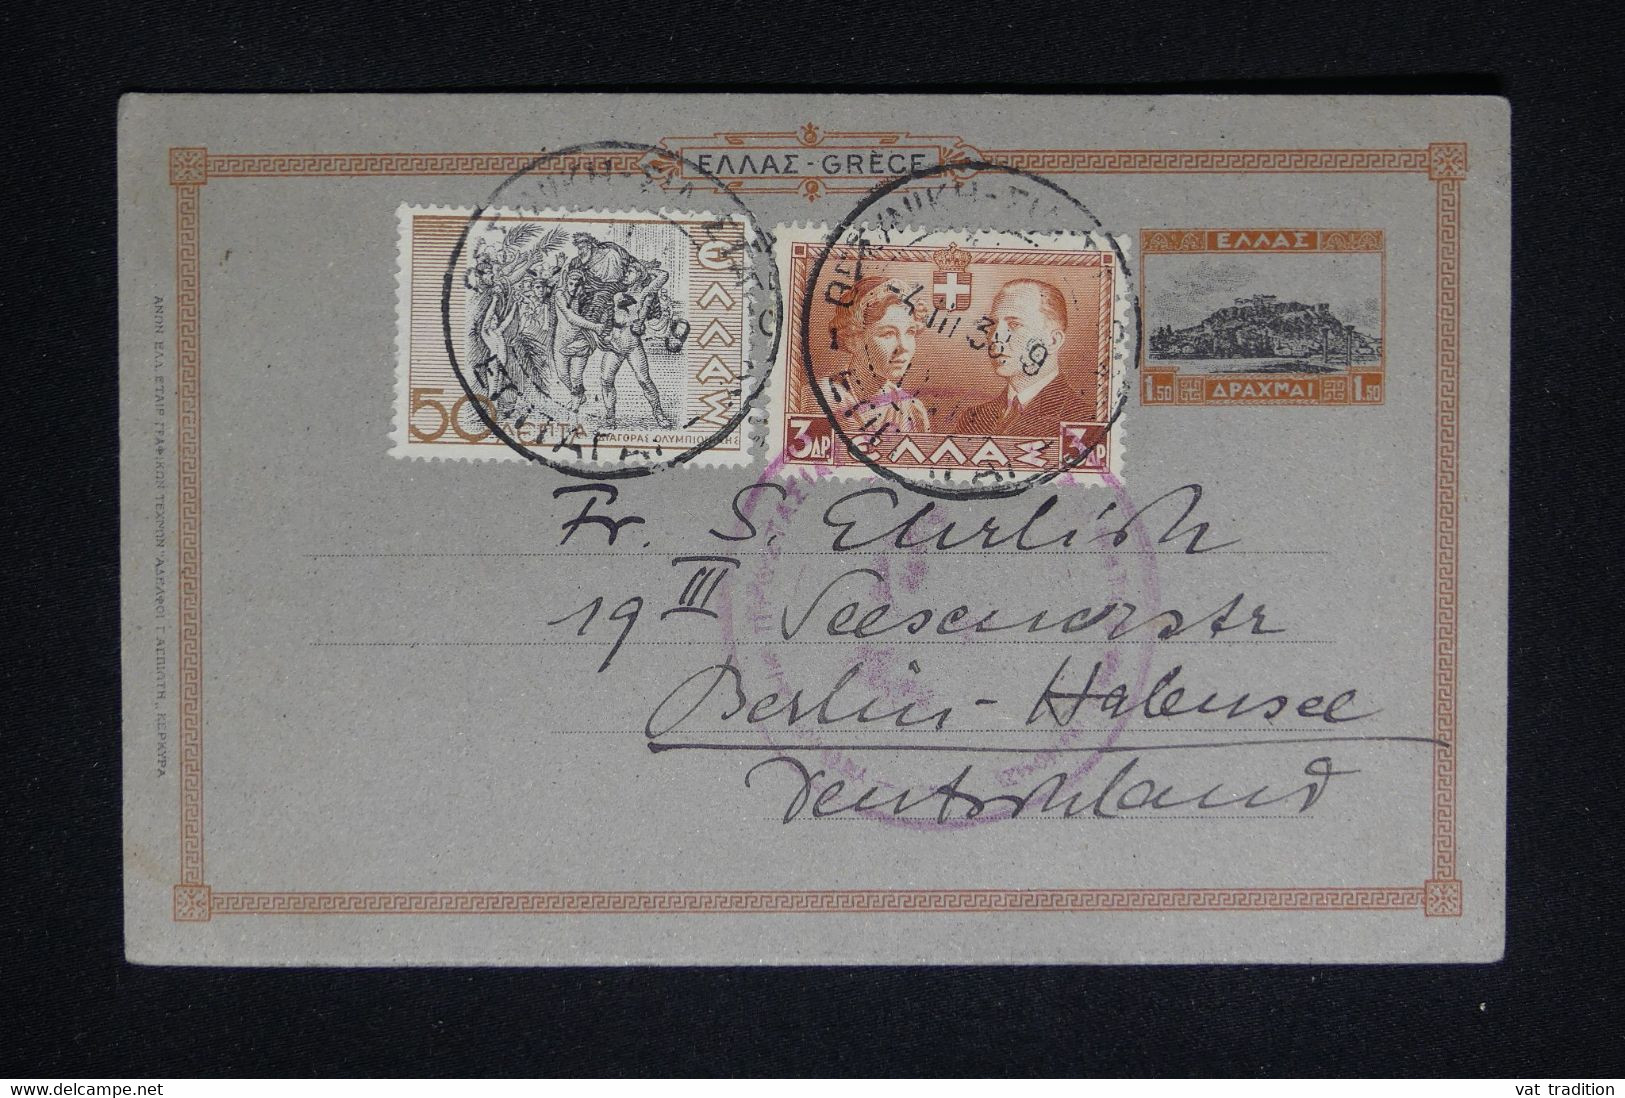 GRECE - Entier Postal + Complément De Athènes Pour Berlin En 1938 - L 91238 - Postal Stationery